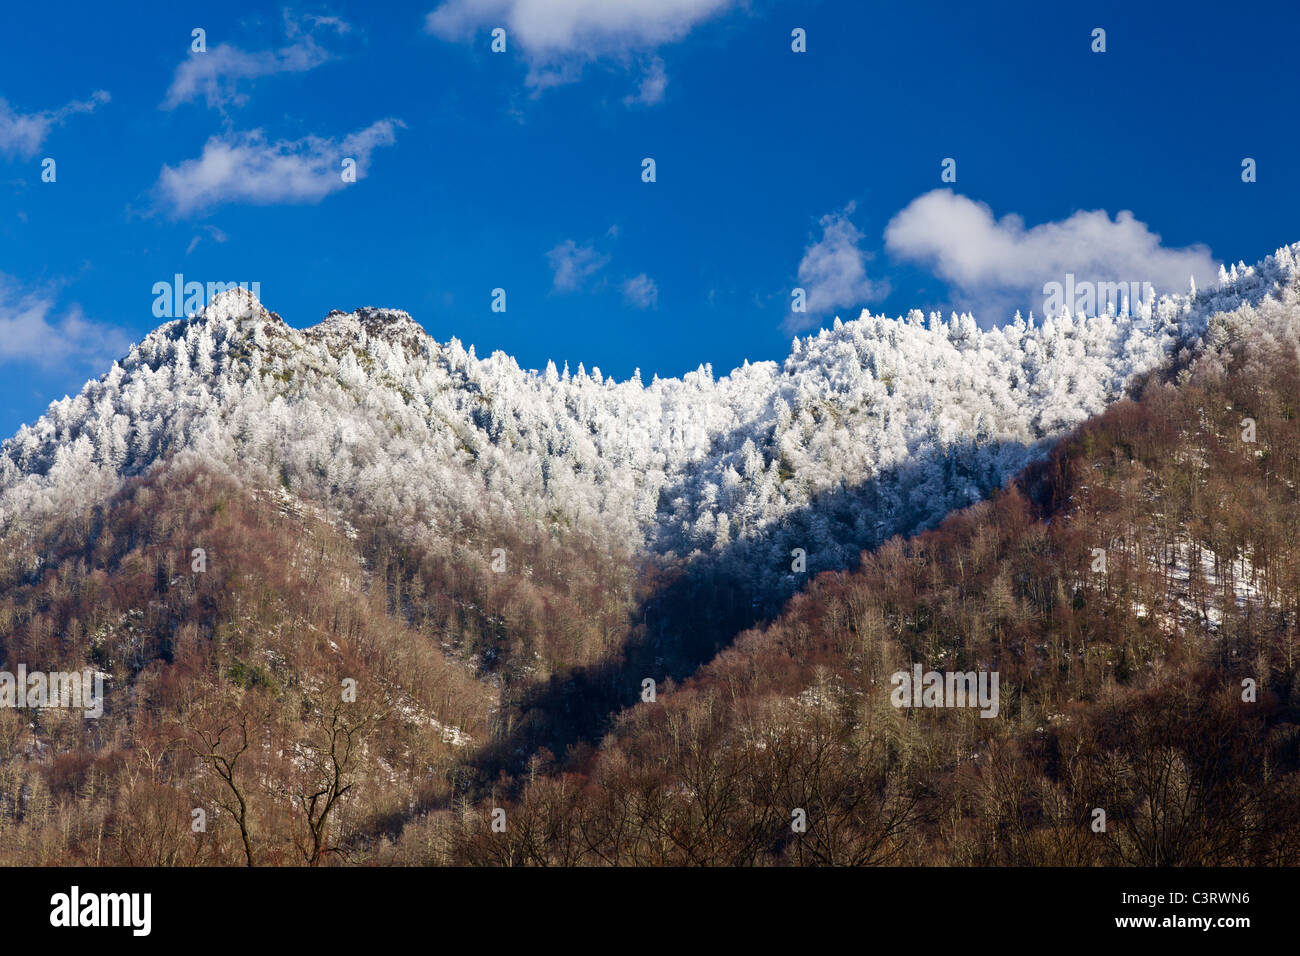 Great Smoky Mountains National Park, ESTADOS UNIDOS - vista de la chimenea cimas cubiertas de nieve Foto de stock